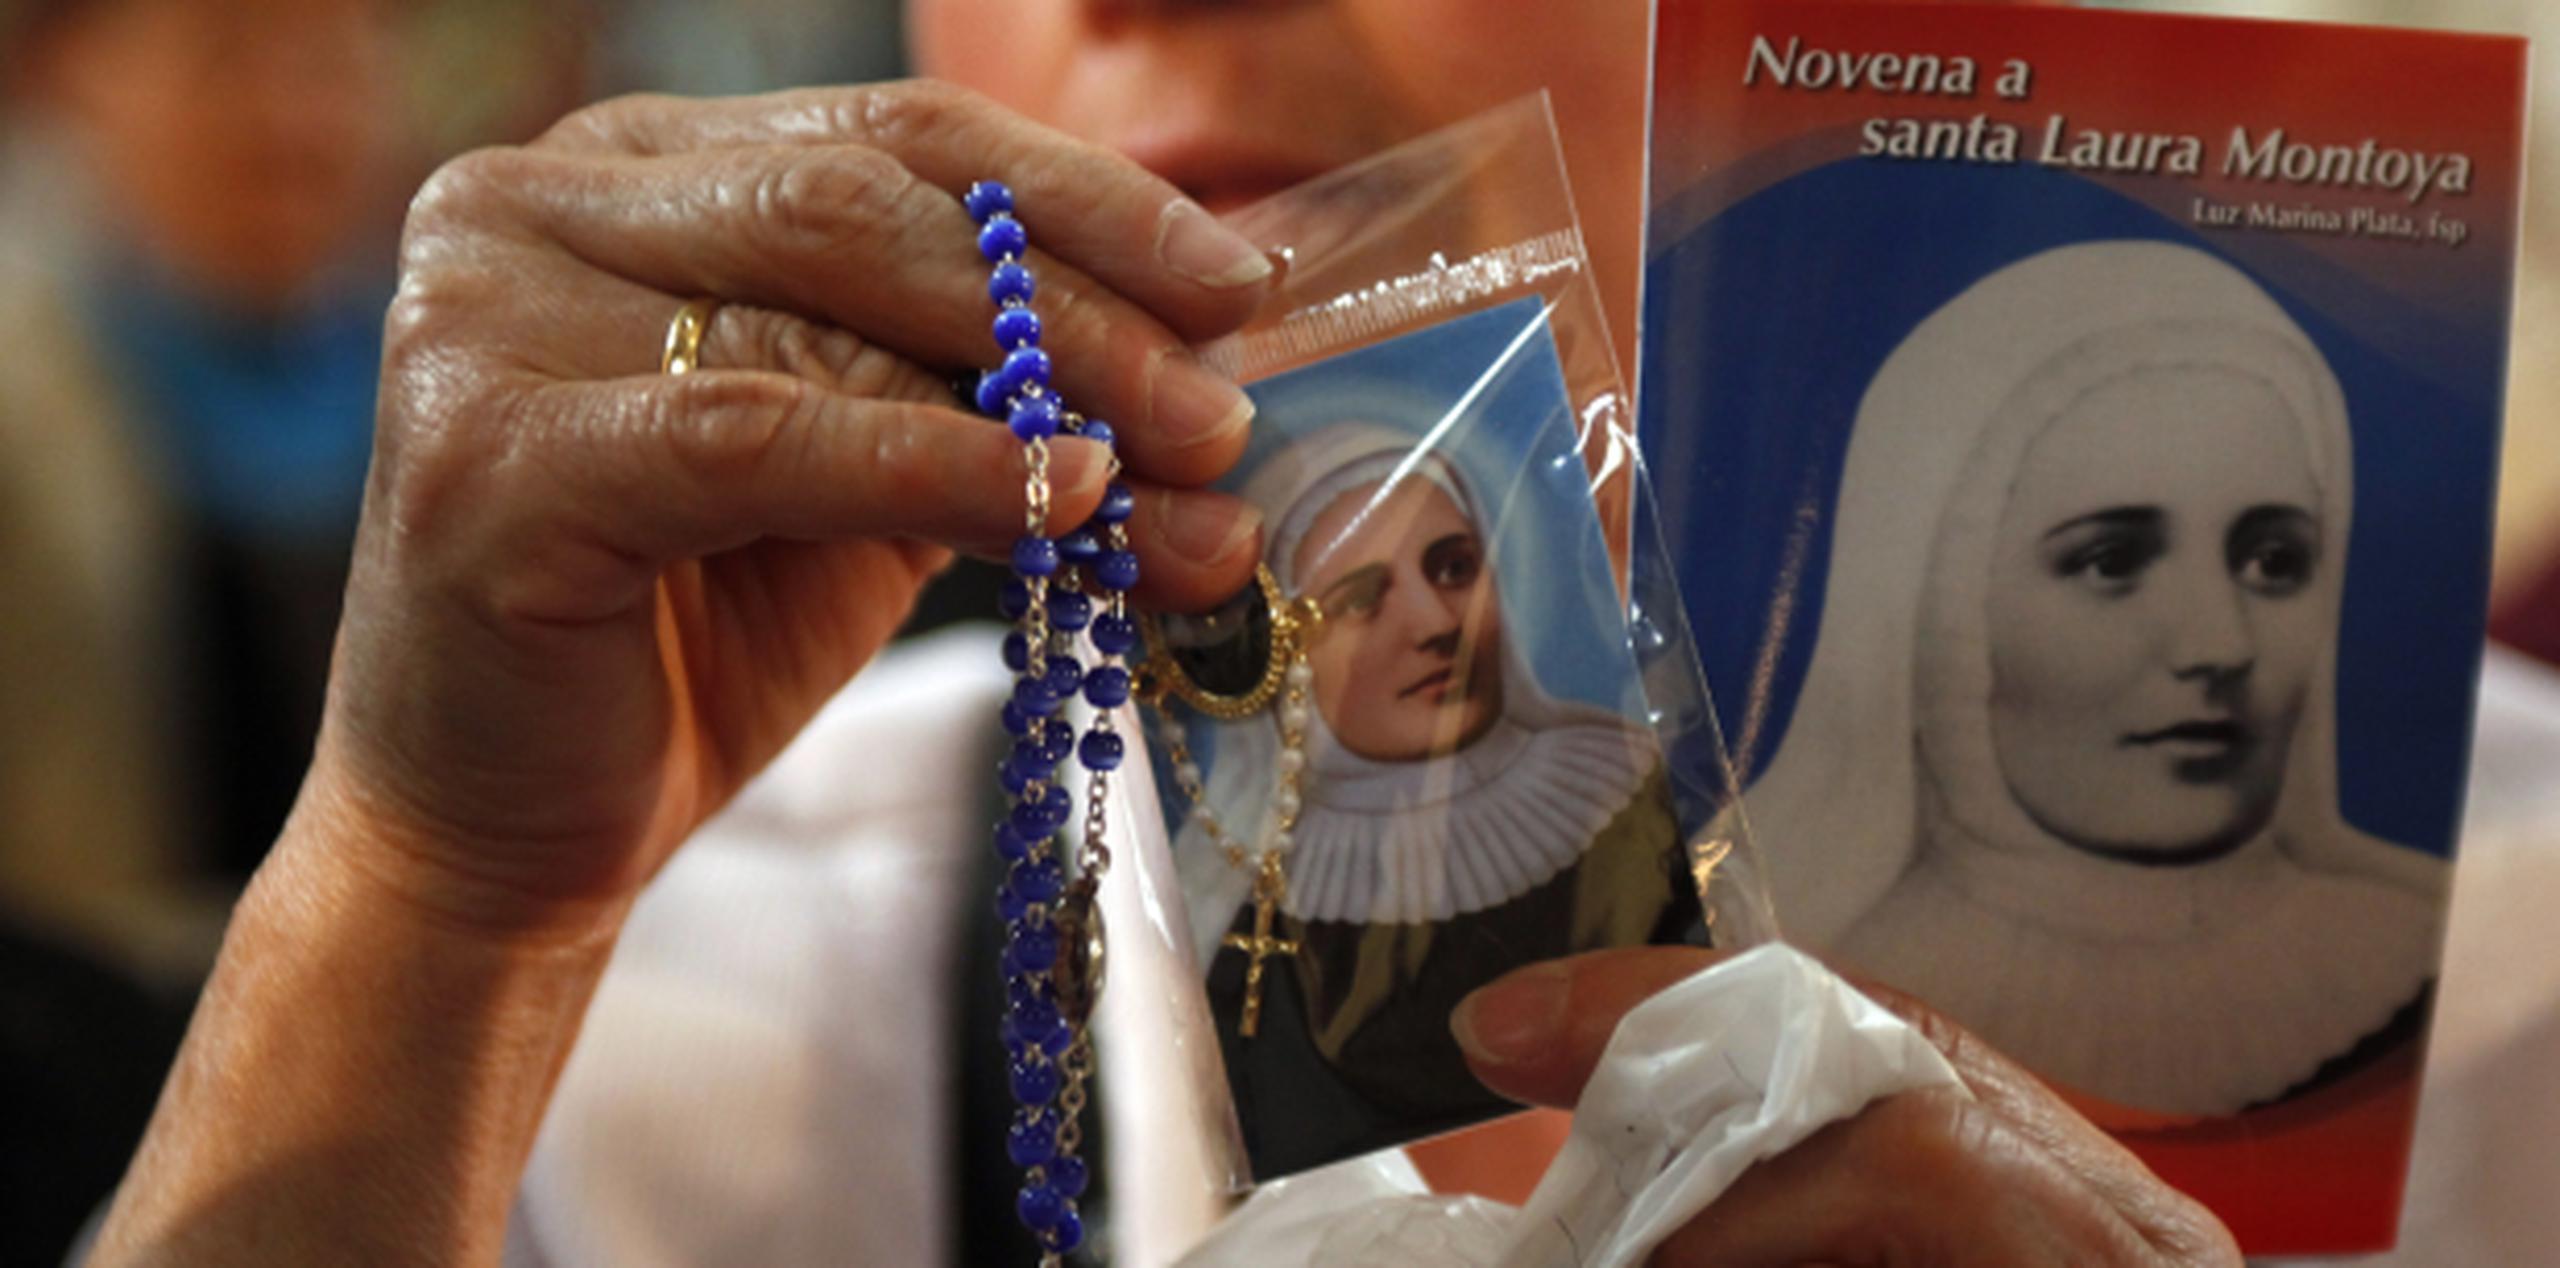 Una colombiana muestra artículos religiosos dedicados a la devoción hacia la santa Laura Montoya. (AP)